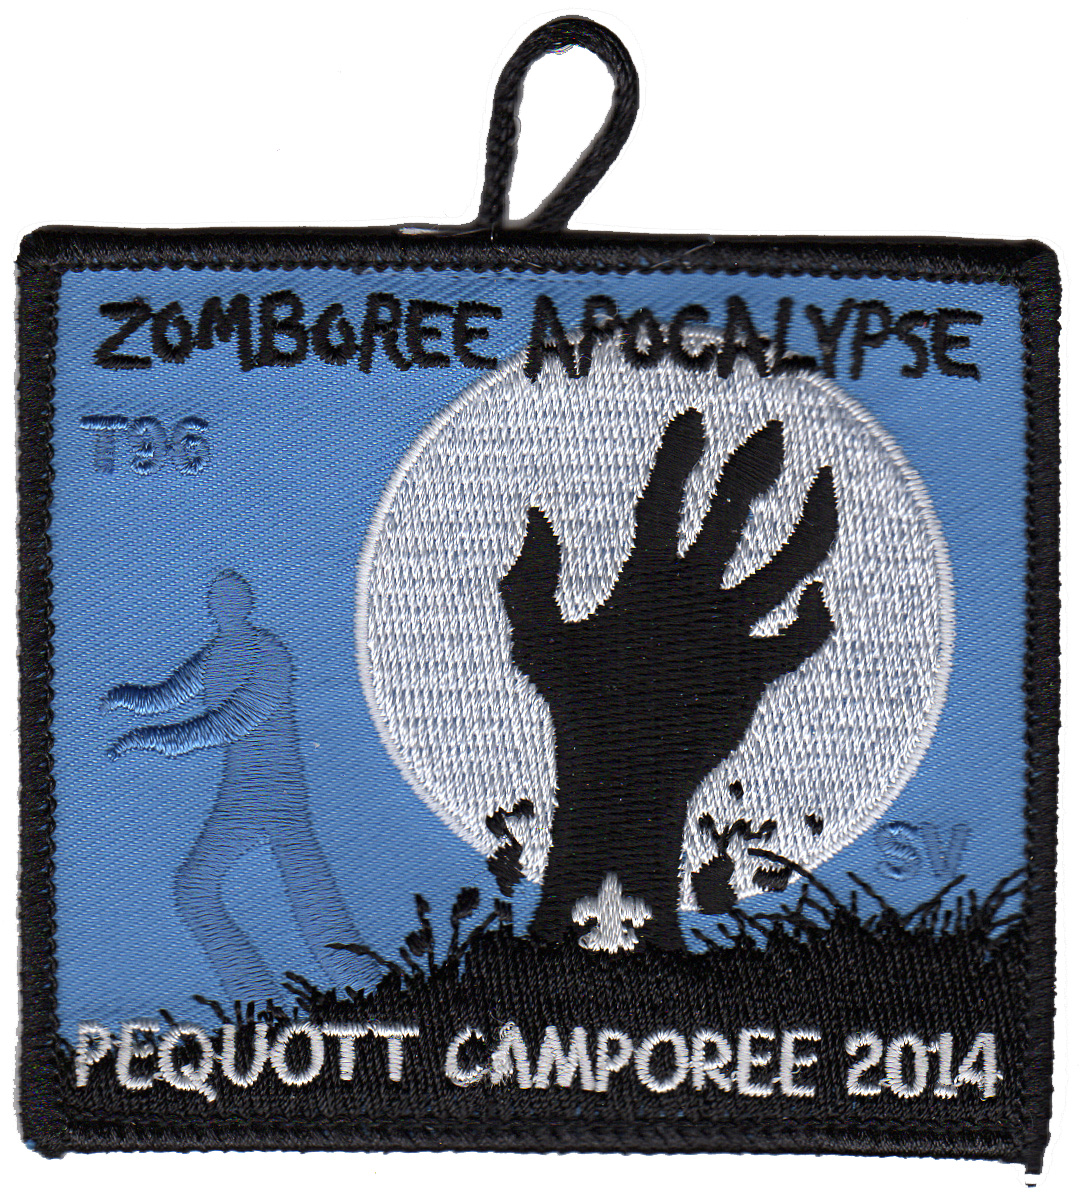 2014 Pequott Camporee